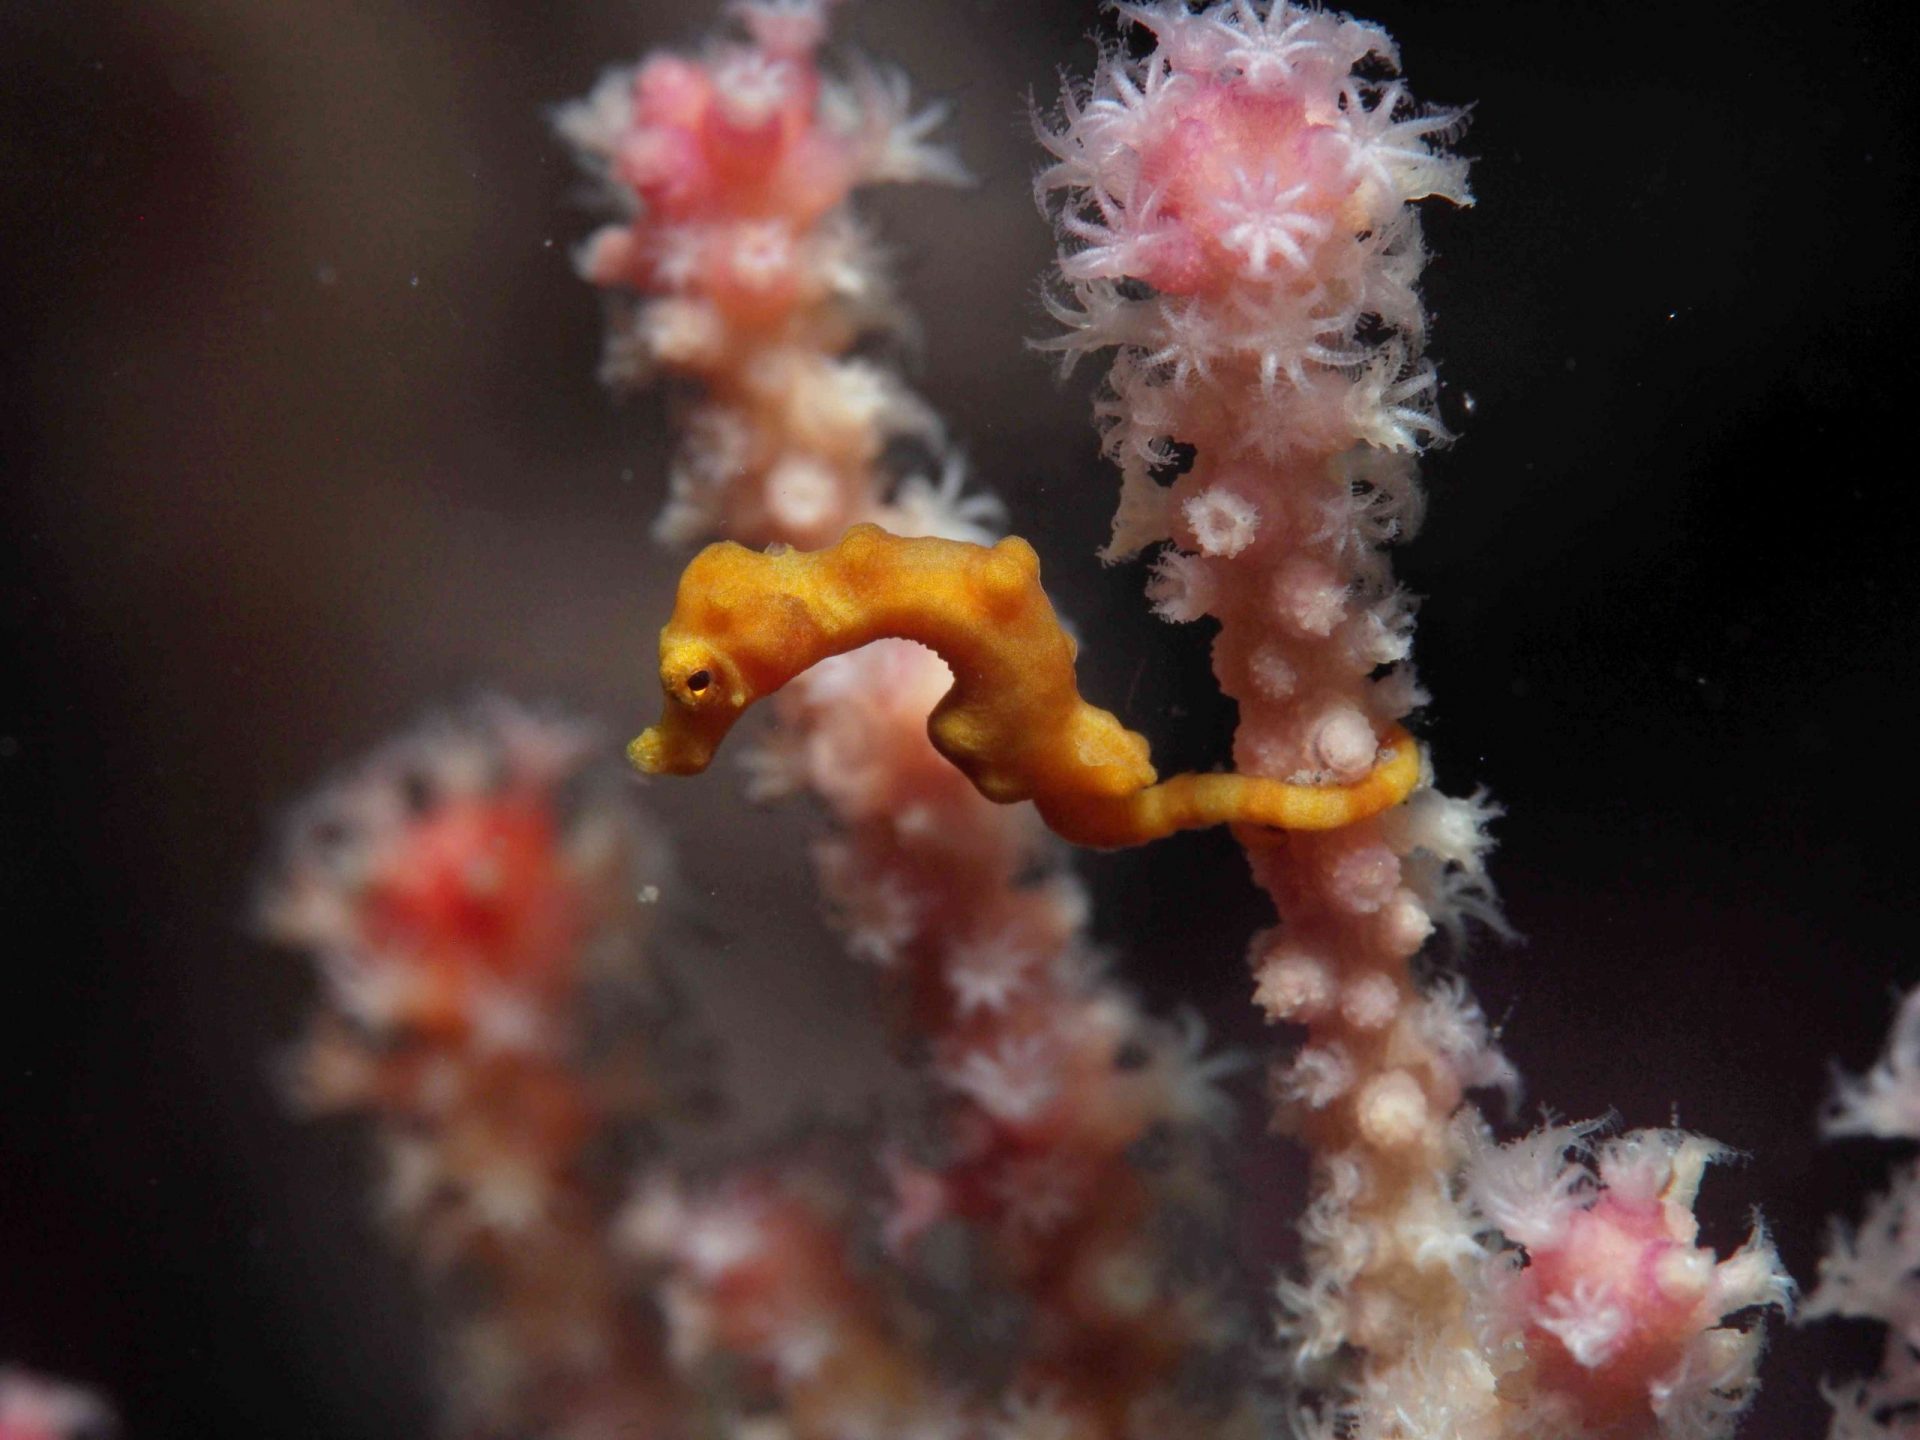 Un caballito de mar pigmeo de Denise amarillo sujeto a la rama de una planta submarina rosa y blanca